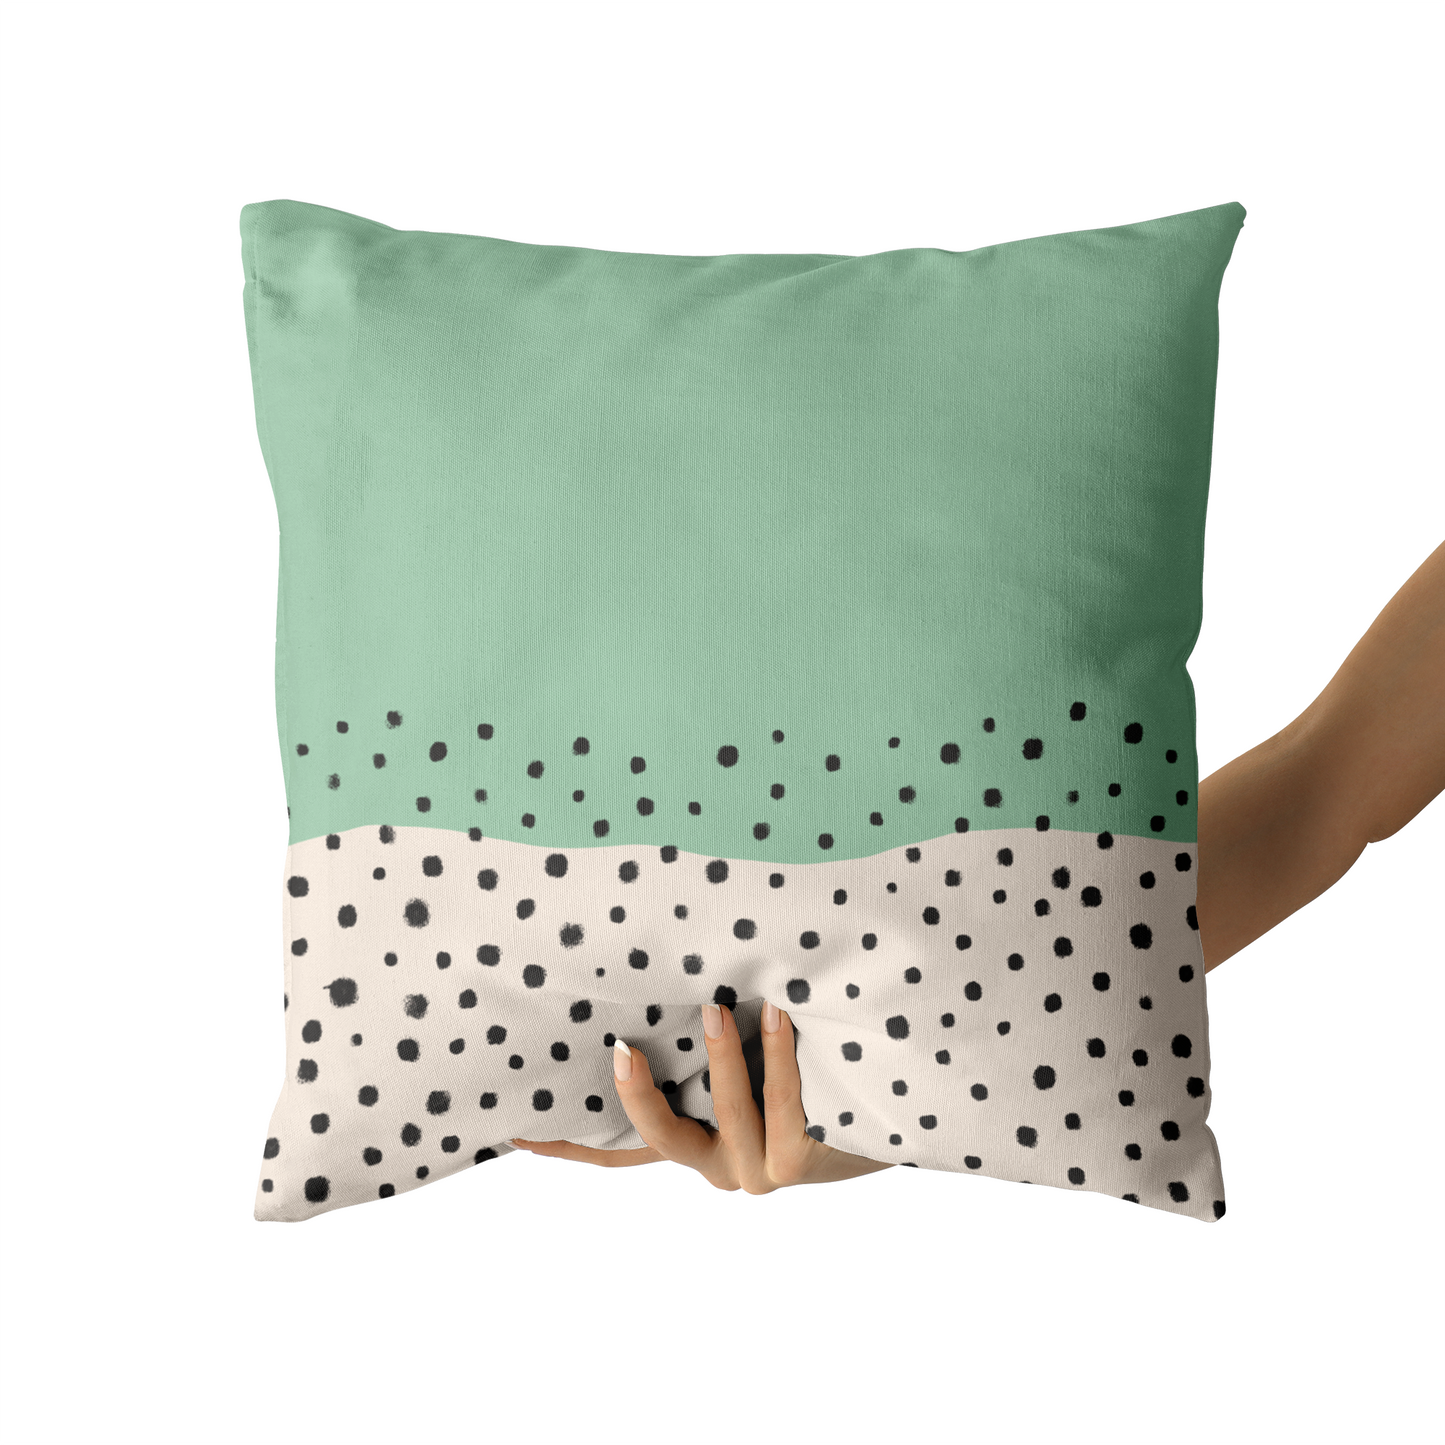 Mint Mid Century Modern Dots Throw Pillow